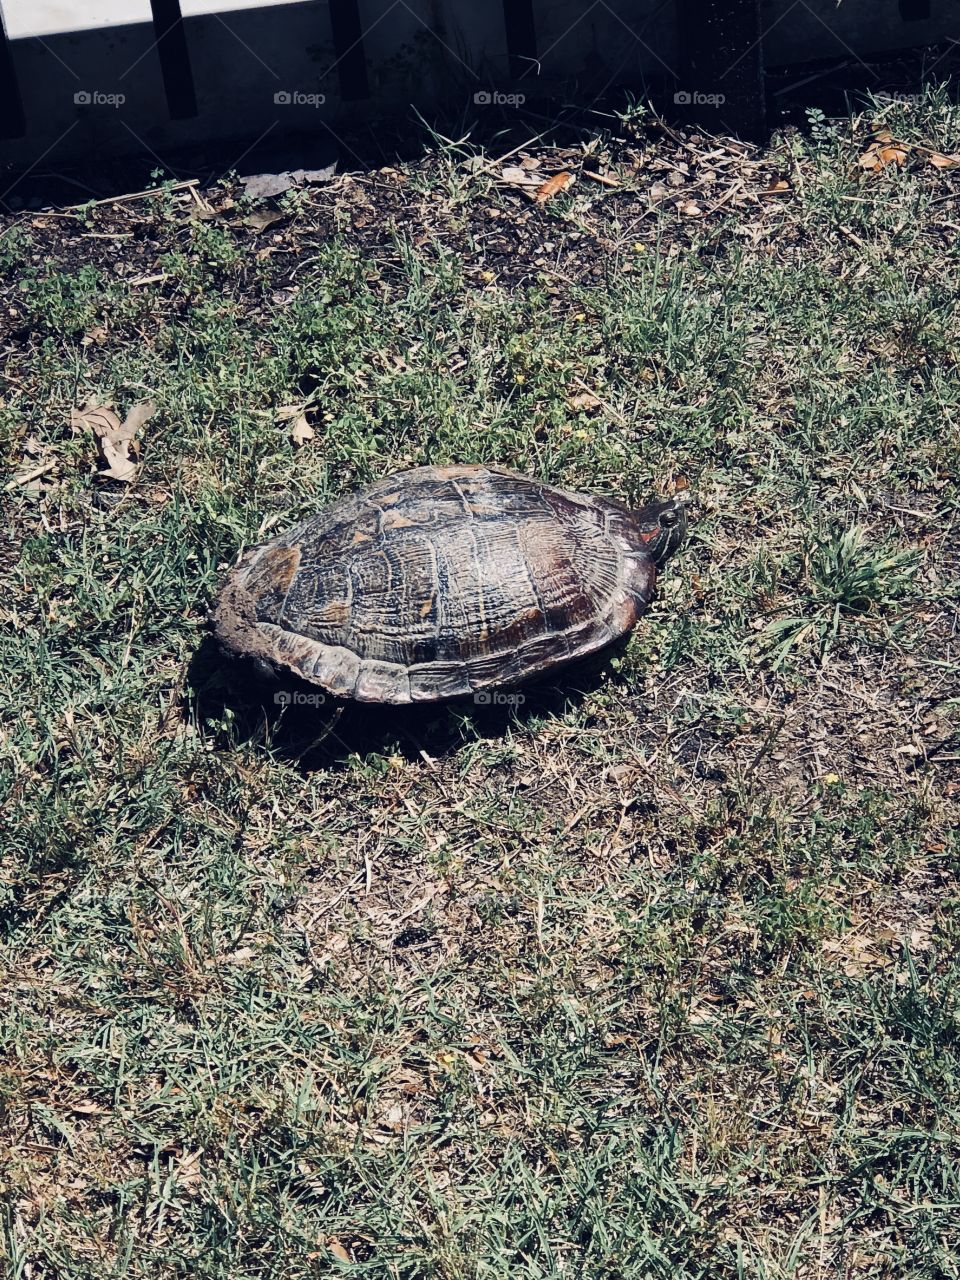 Turtle turtle